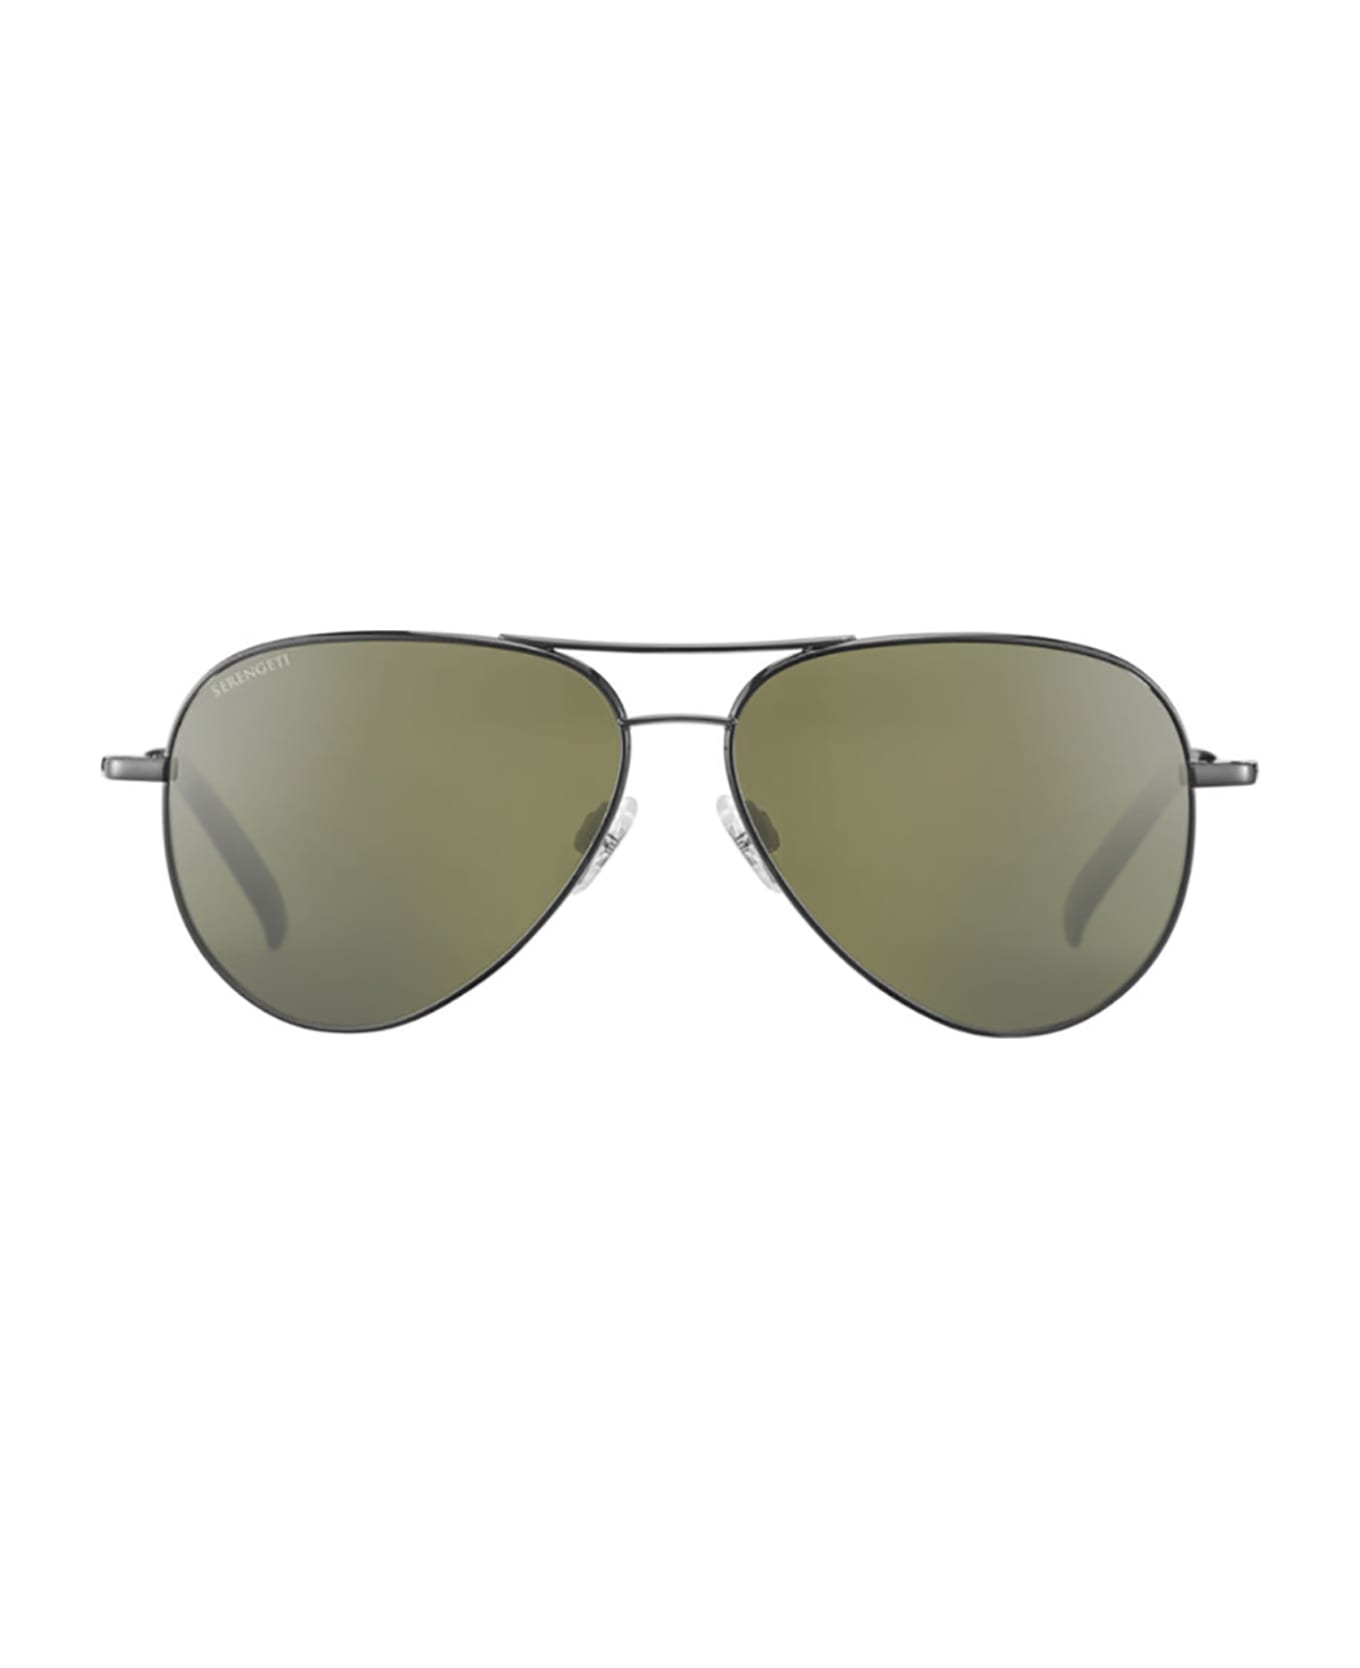 Serengeti Eyewear CARRARA SHINY GUNMETAL Sunglasses - Gun Metal